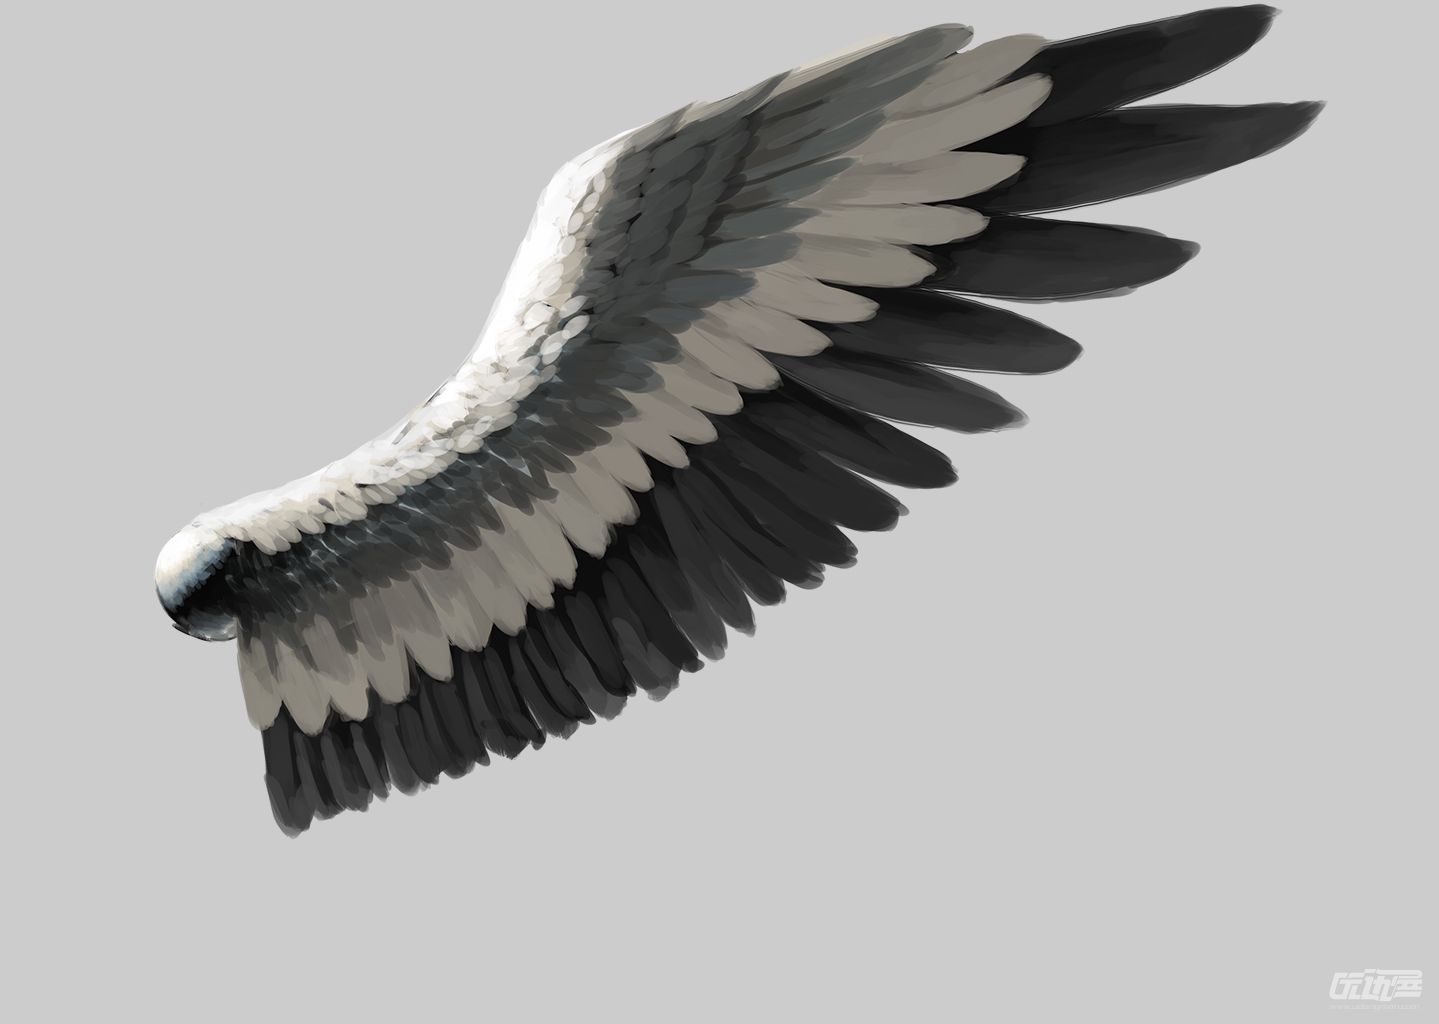 手绘素描风格双翼翅膀矢量图片素材-编号24930690-图行天下